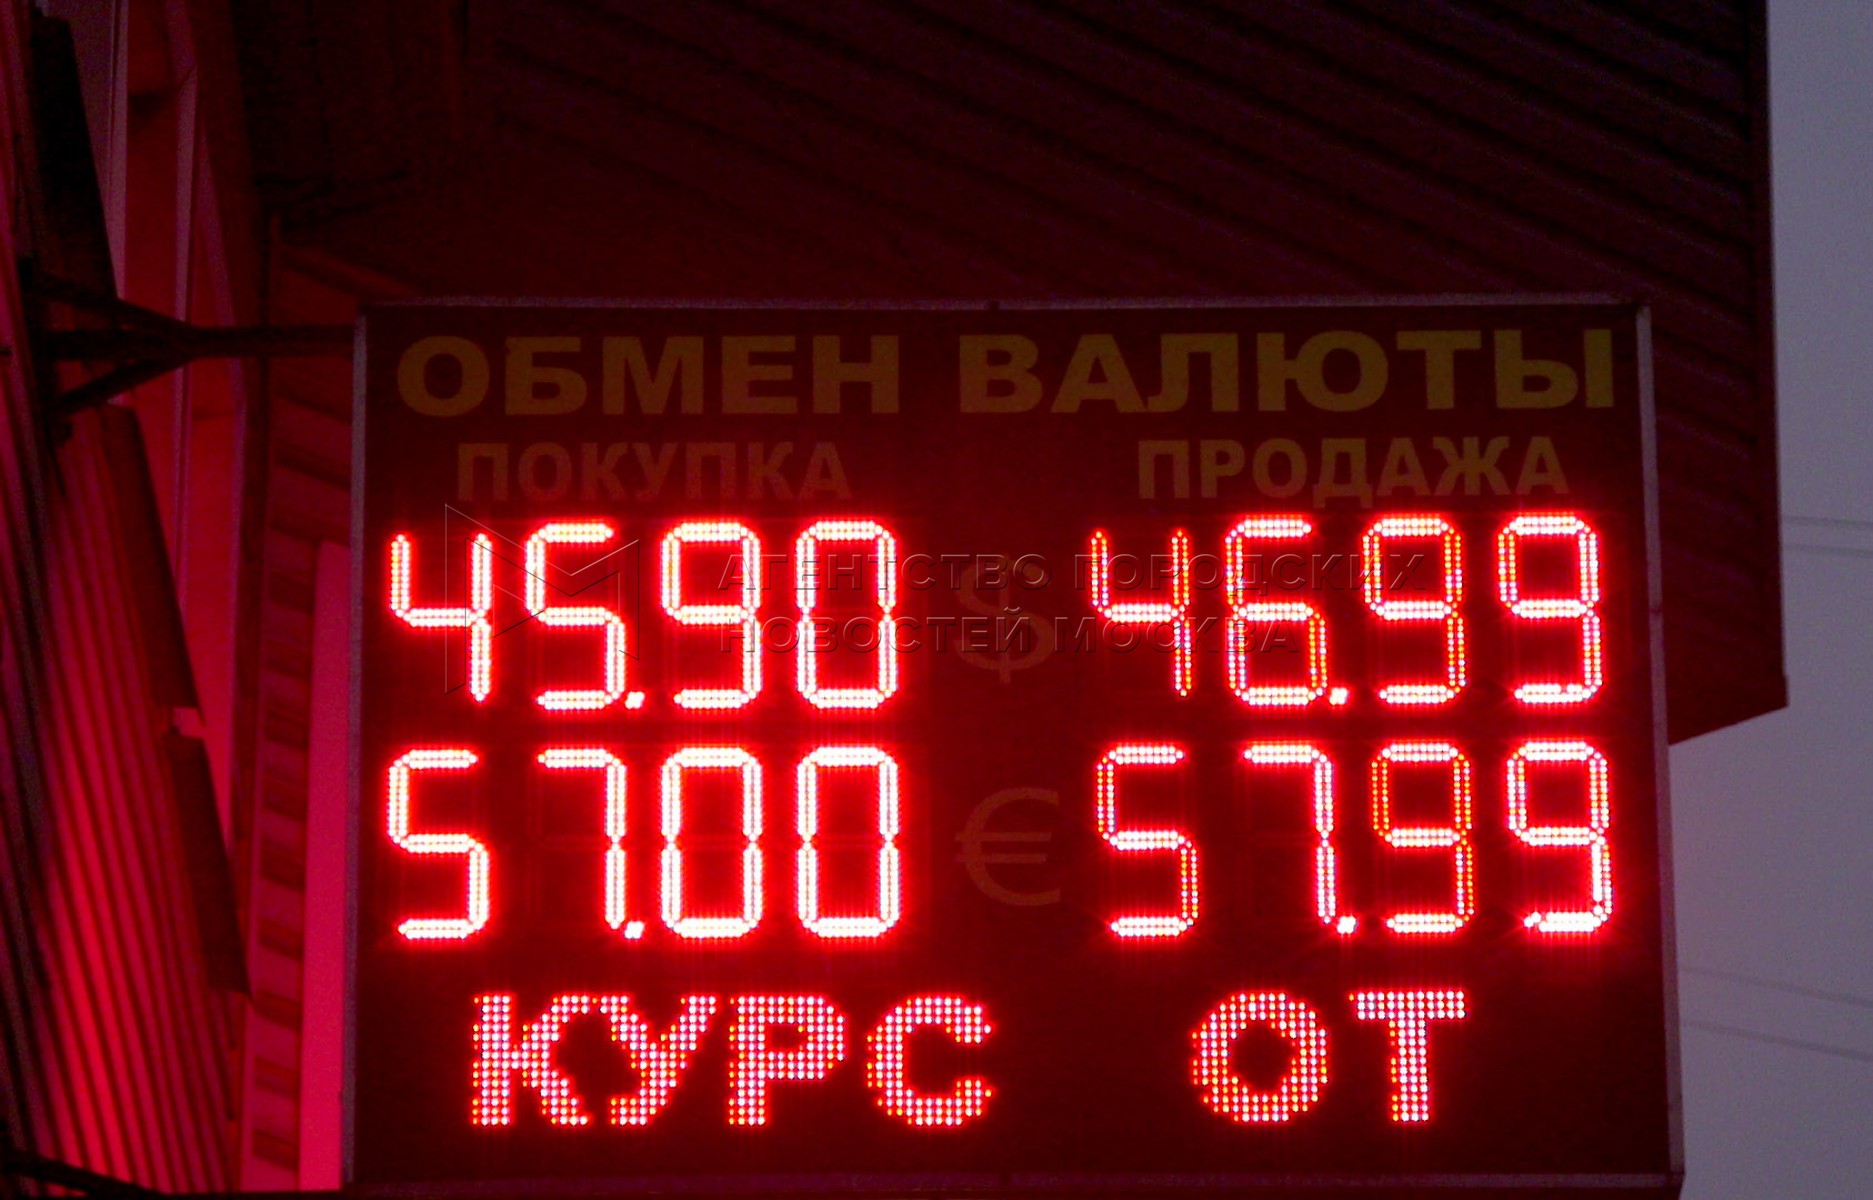 Обмен валюты в свао москва цена биткоина январь 2021